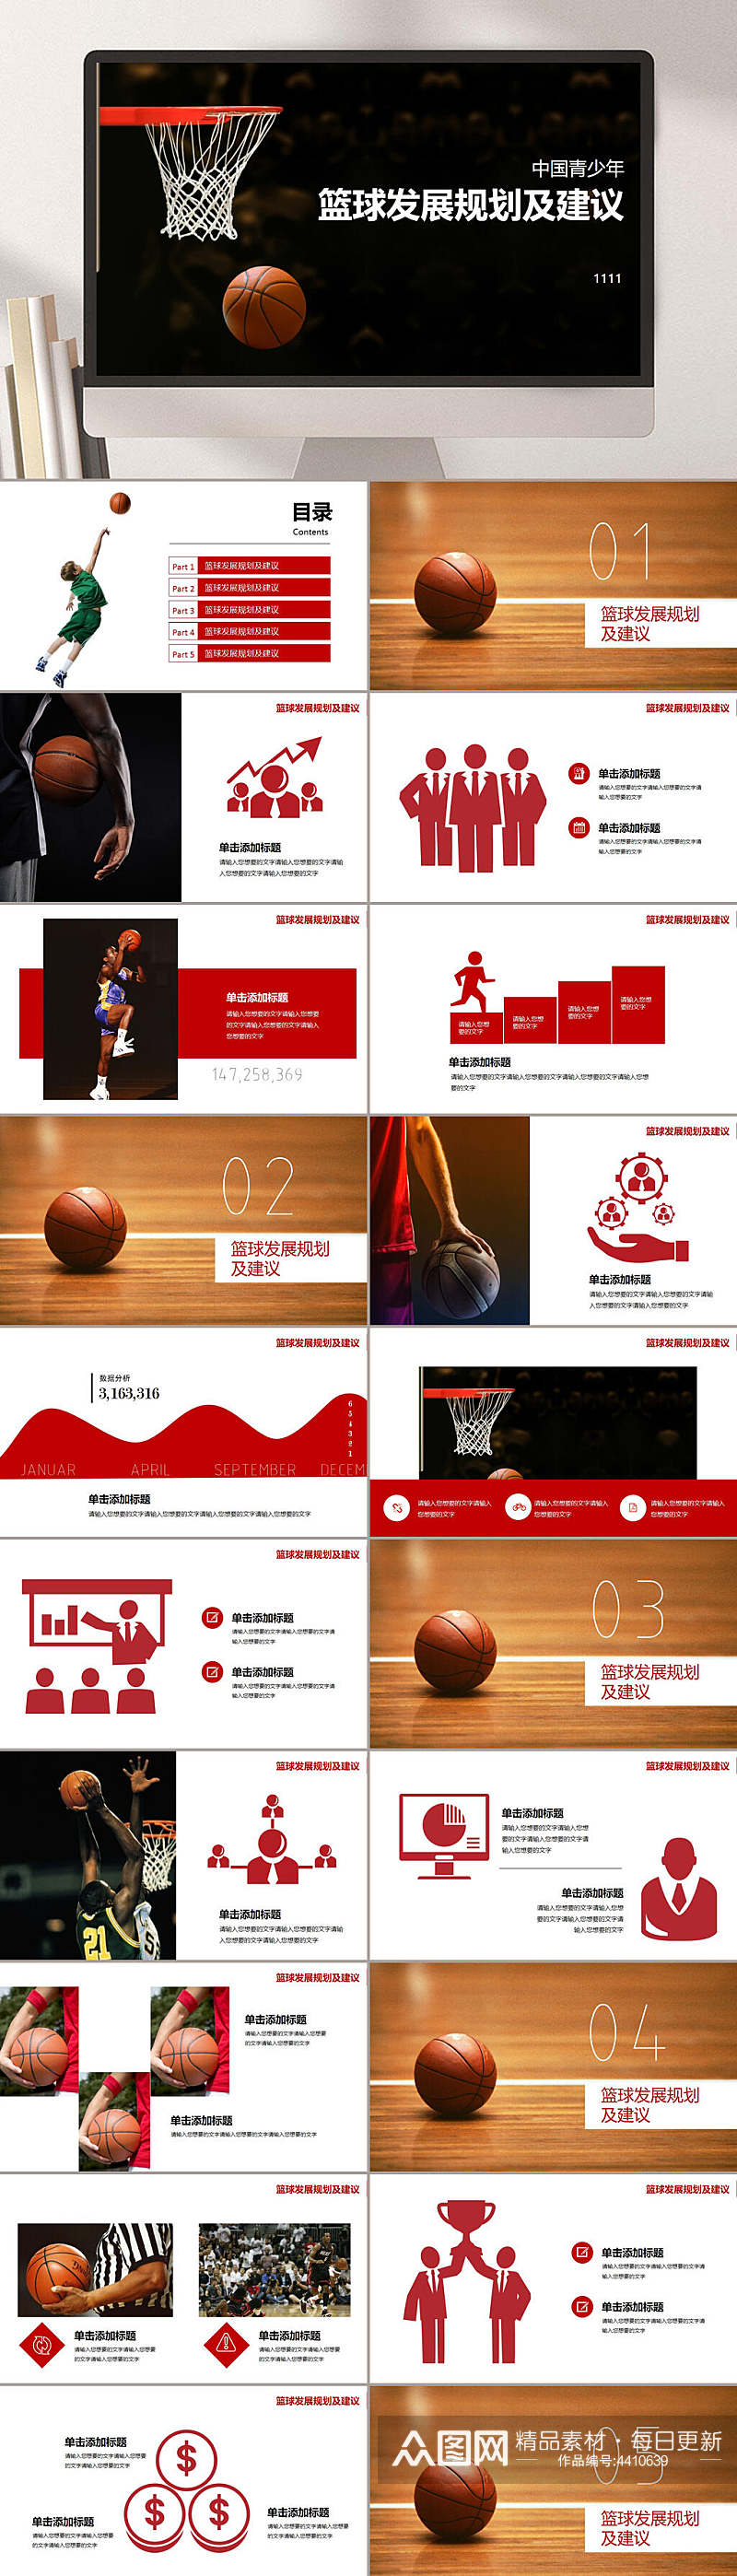 篮球发展规划及建议篮球运动比赛PPT素材